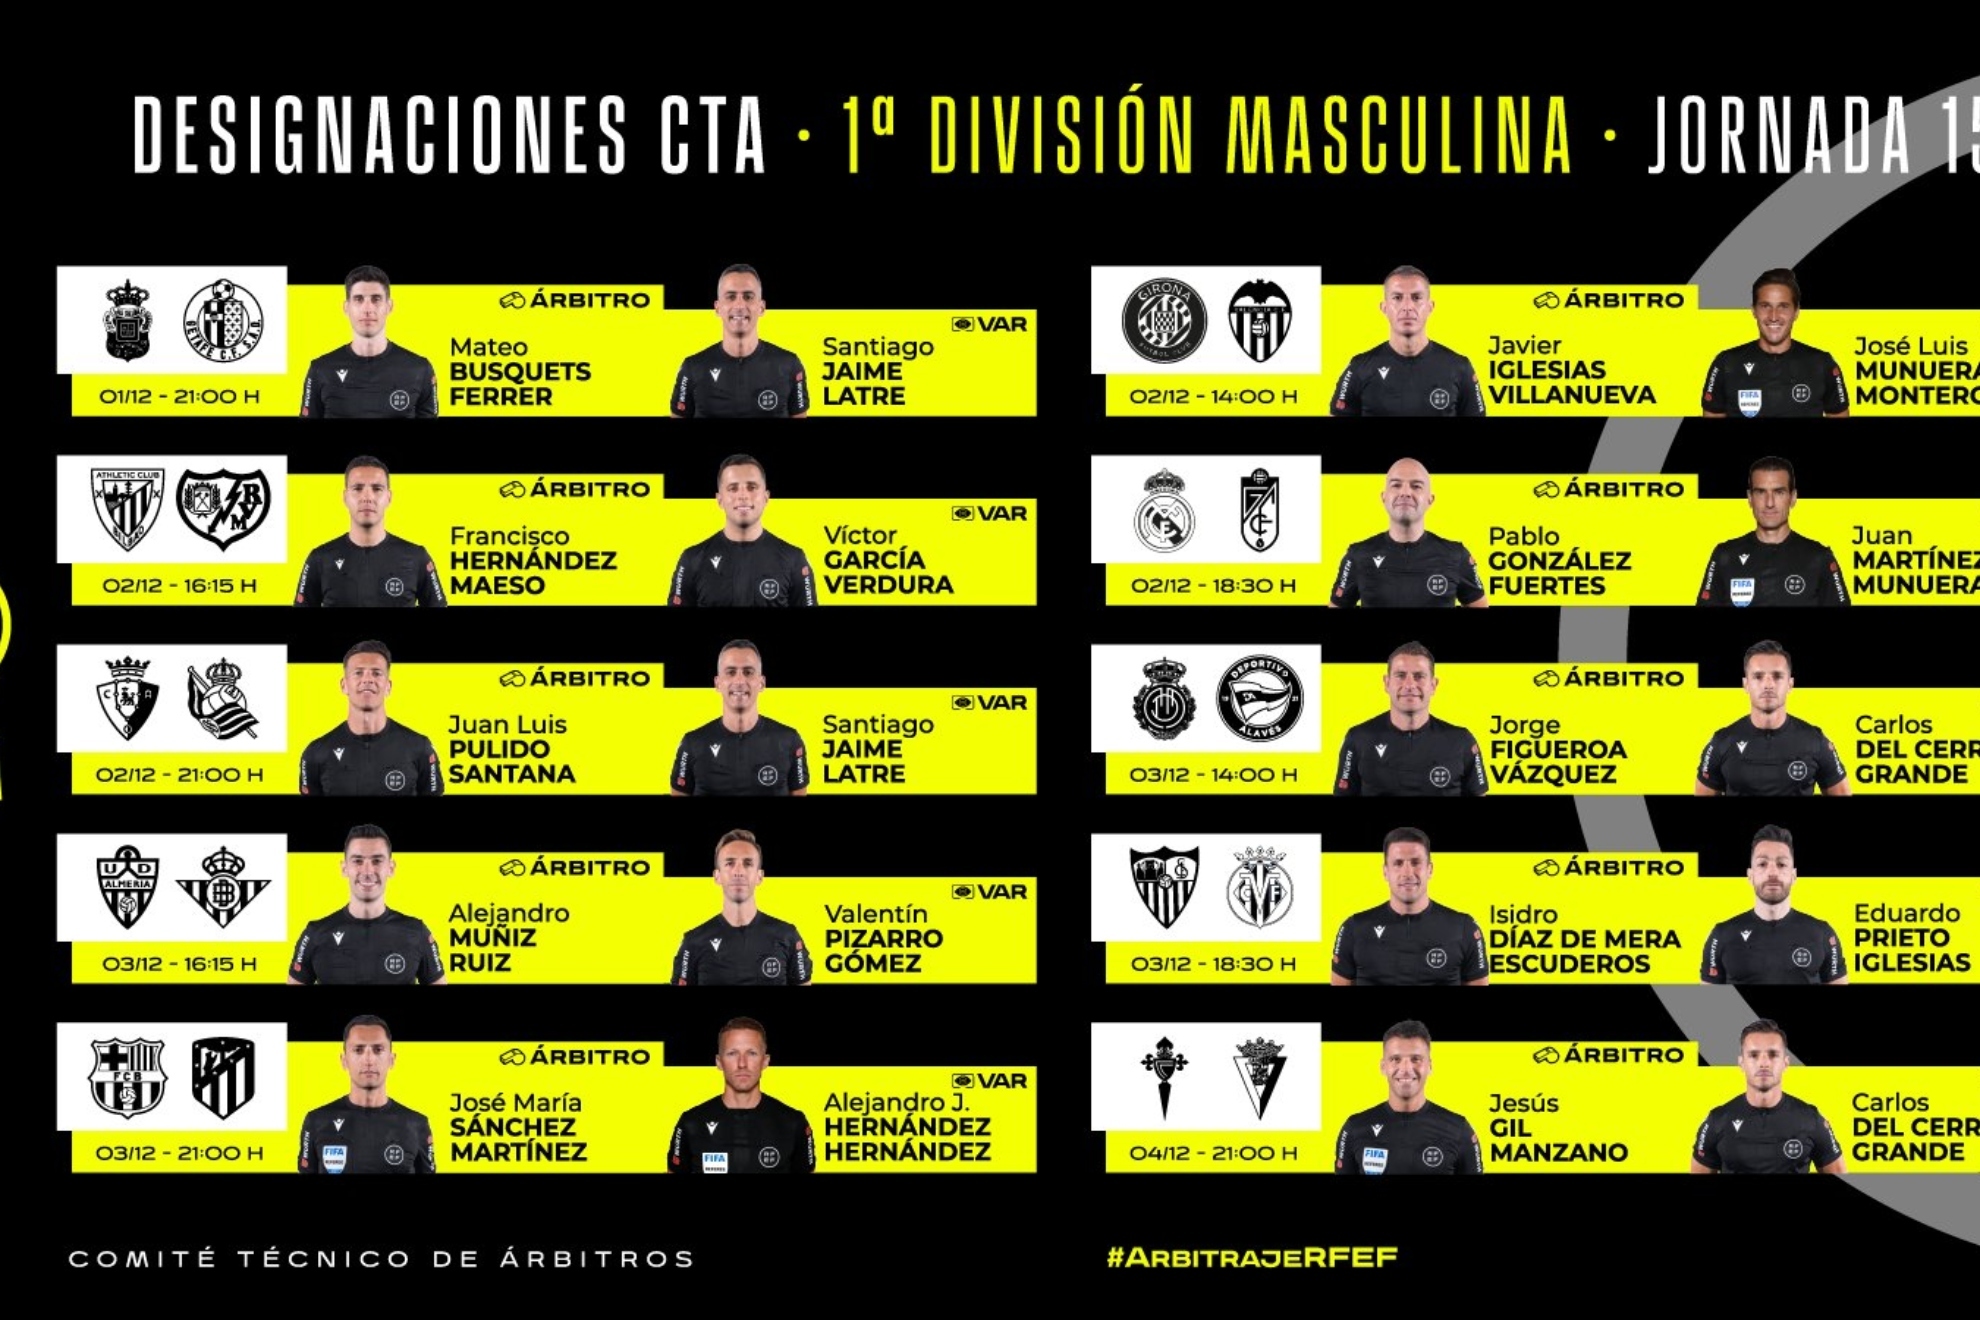 Estos son los árbitros que dirigirán los partidos de la jornada 15 en Primera División masculina.